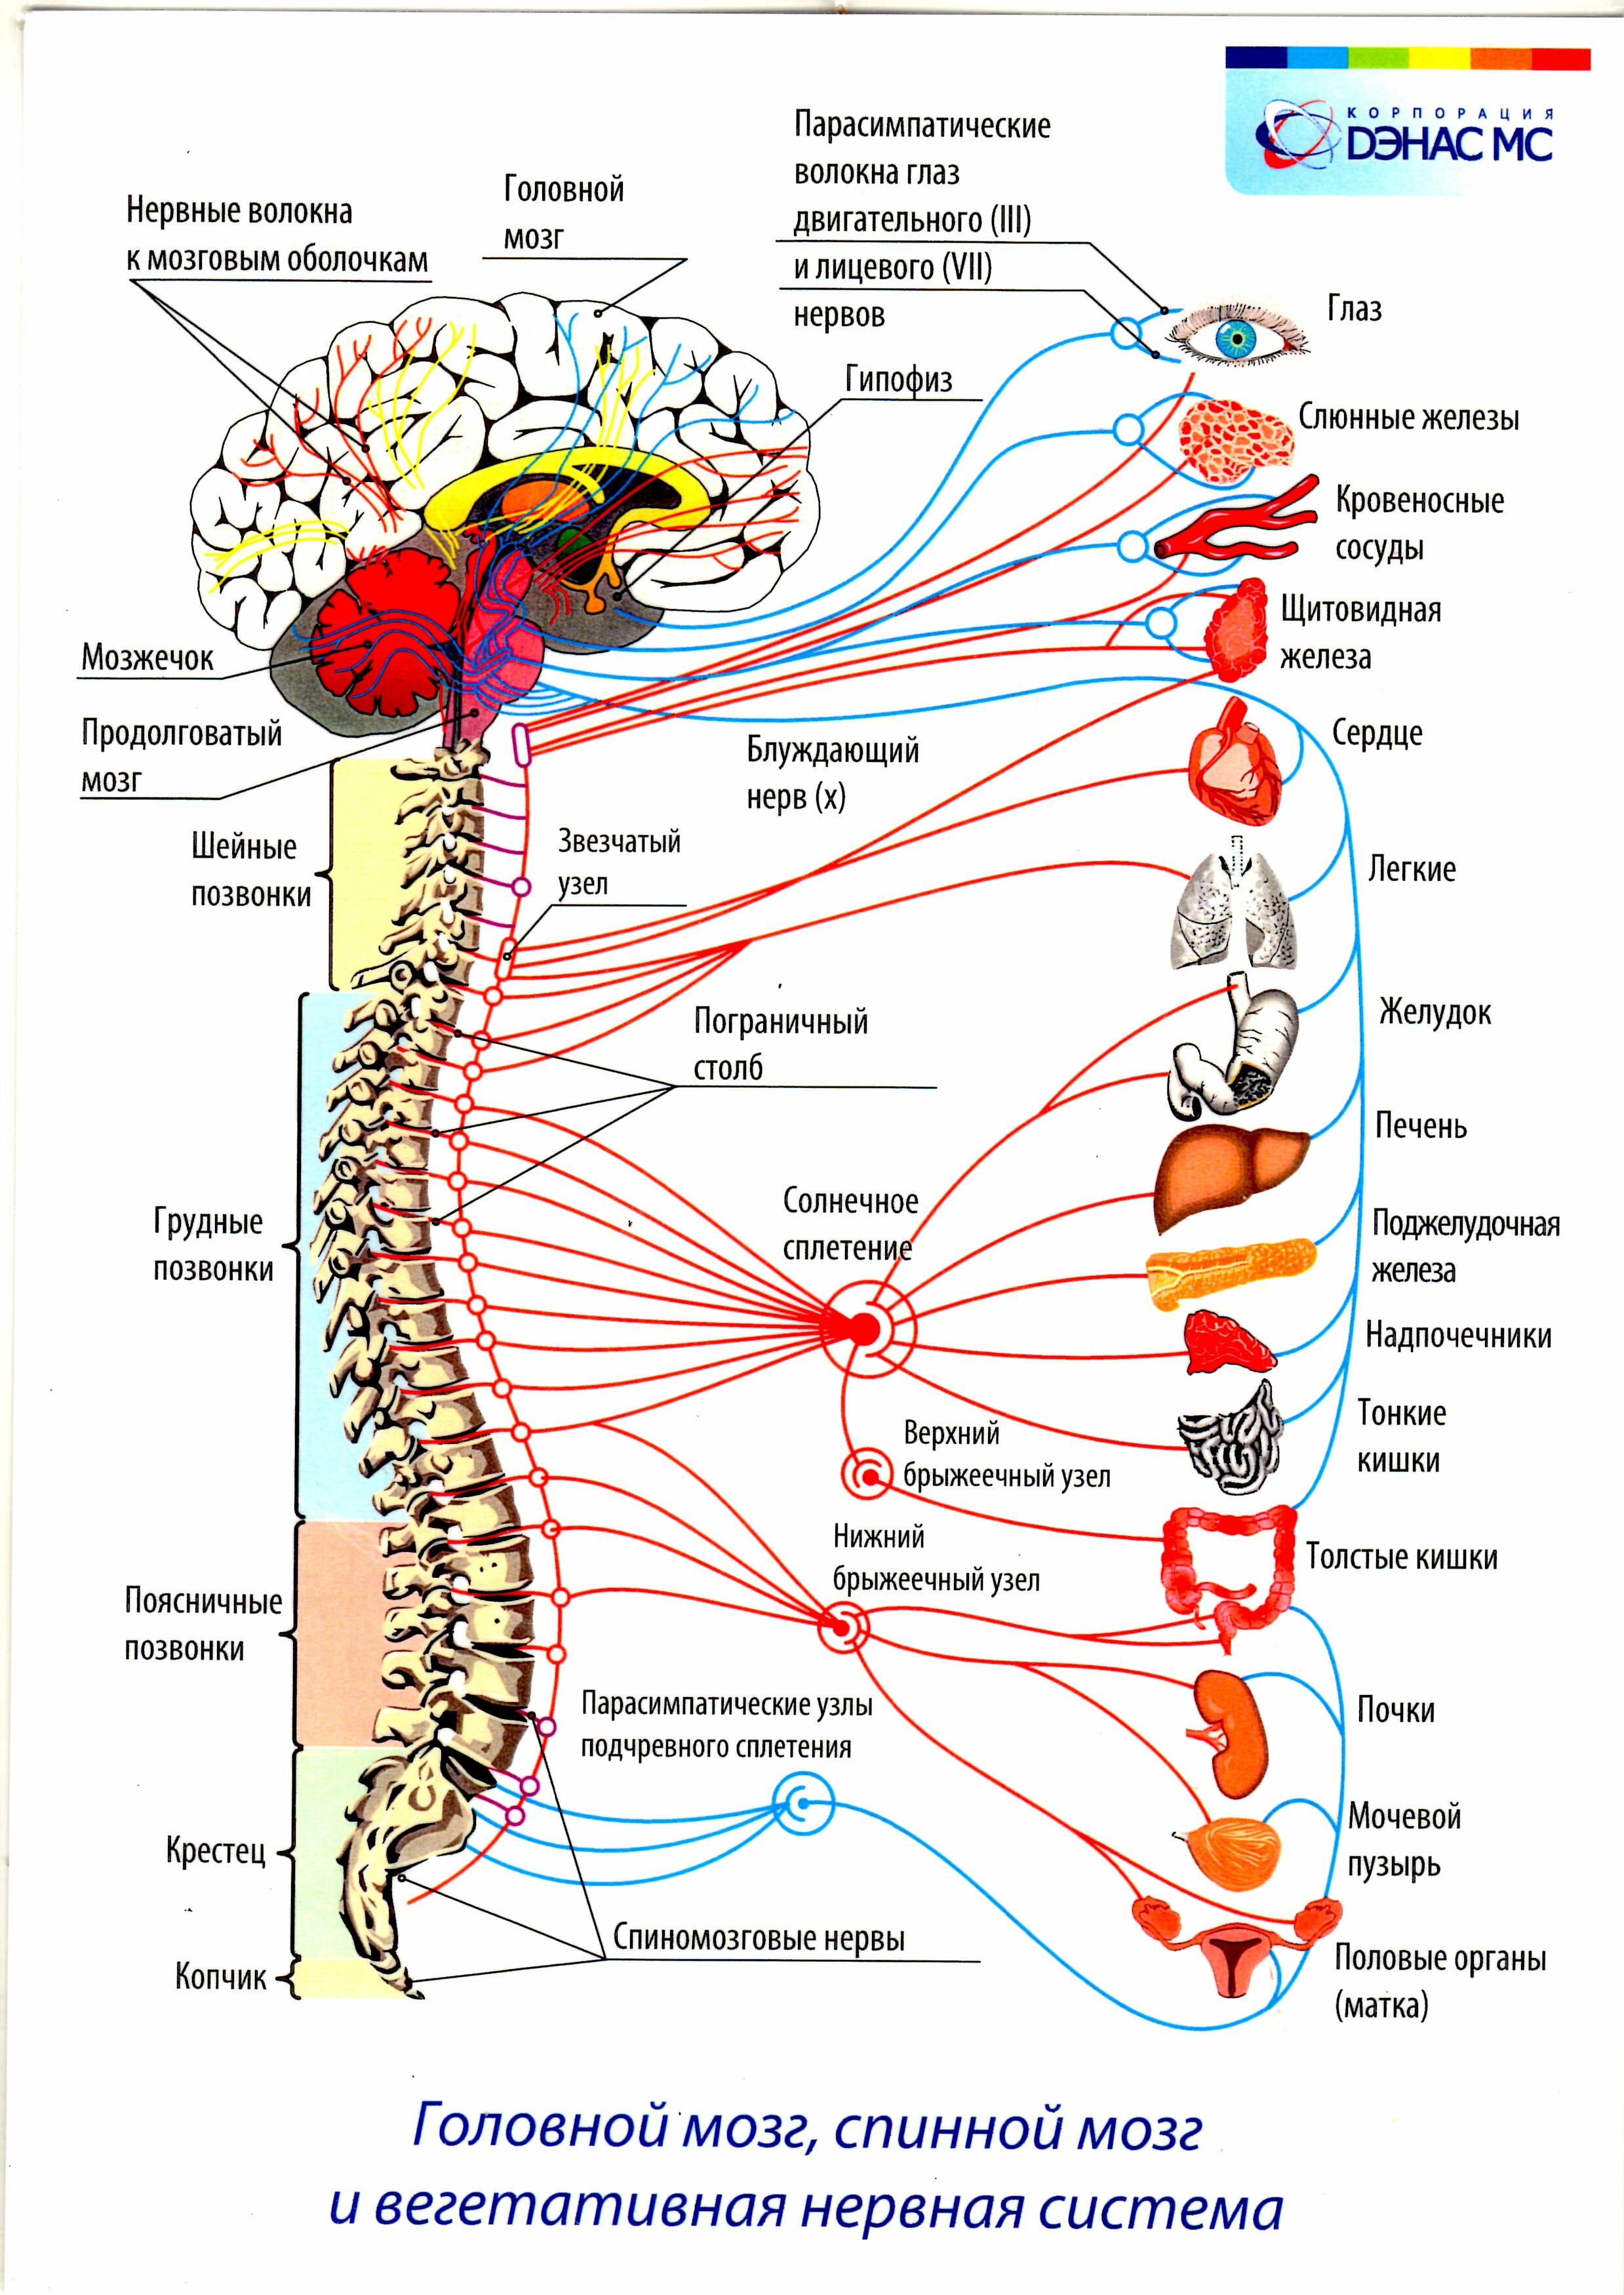 Вегетативные части тела. Вегетативная нервная система внутренние органы. Вегетативная нервная система схема спинного мозга. Вегетативная нервная система схема иннервации органов. Иннервация позвоночника схема.